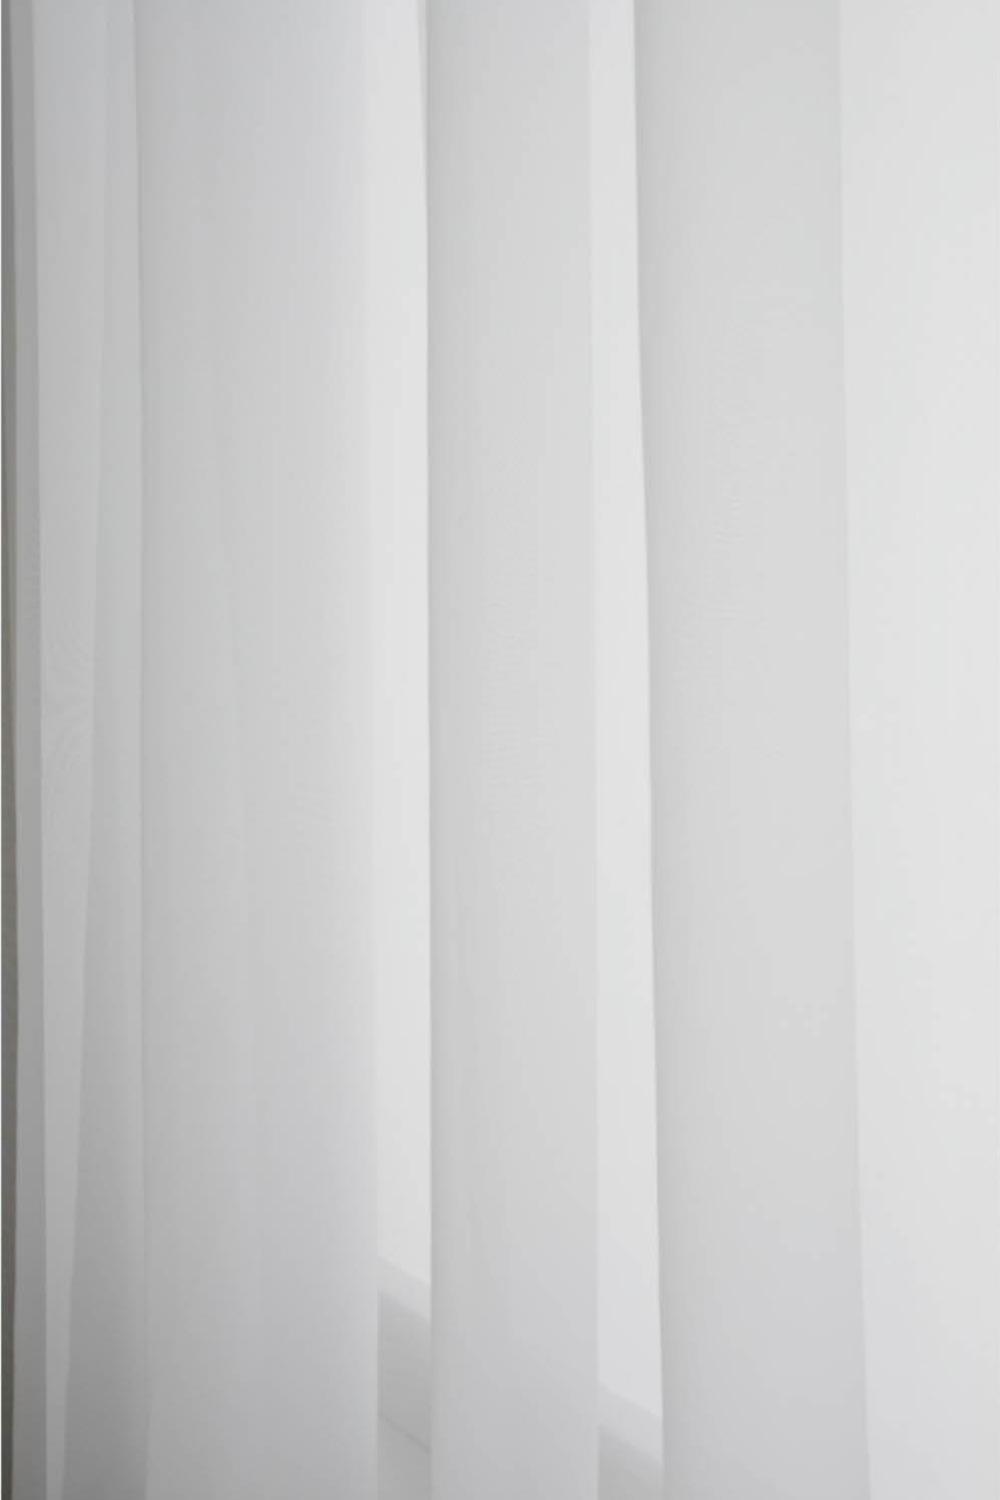 Skir Hotel Curtain 290x250 cm, White